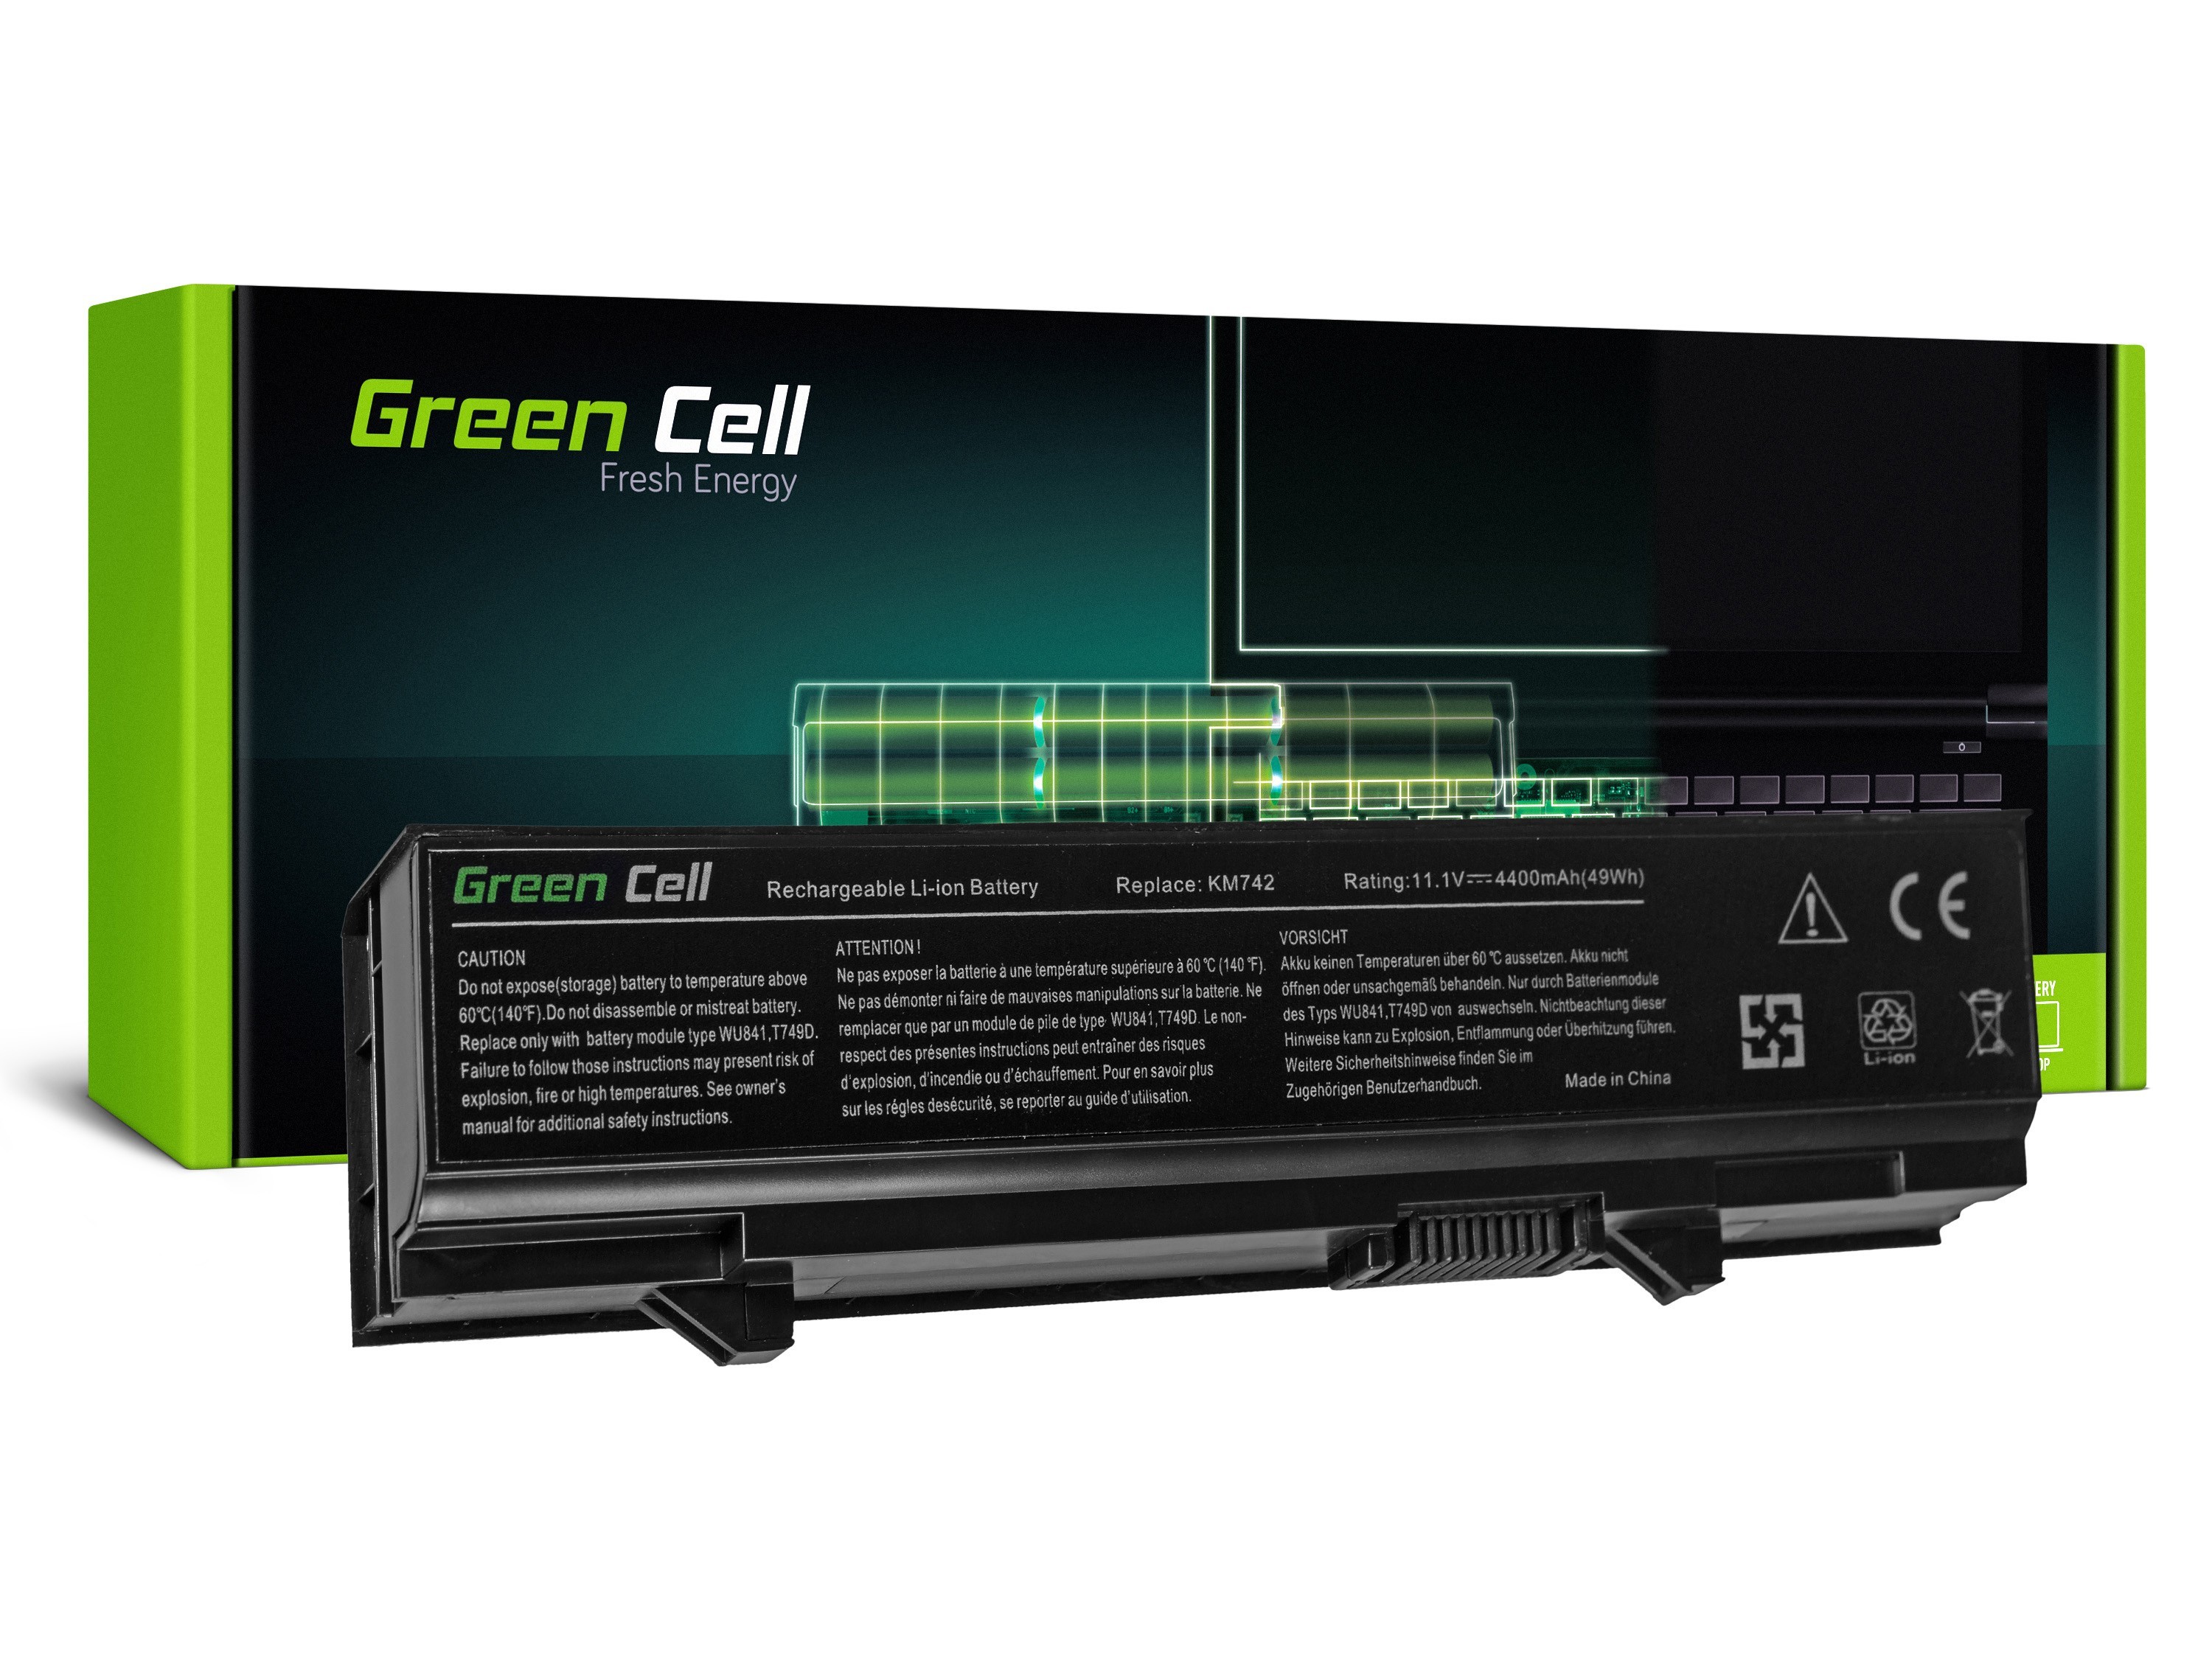 Green Cell laptop batteri till Dell Latitude E5400 E5410 E5500 E5510